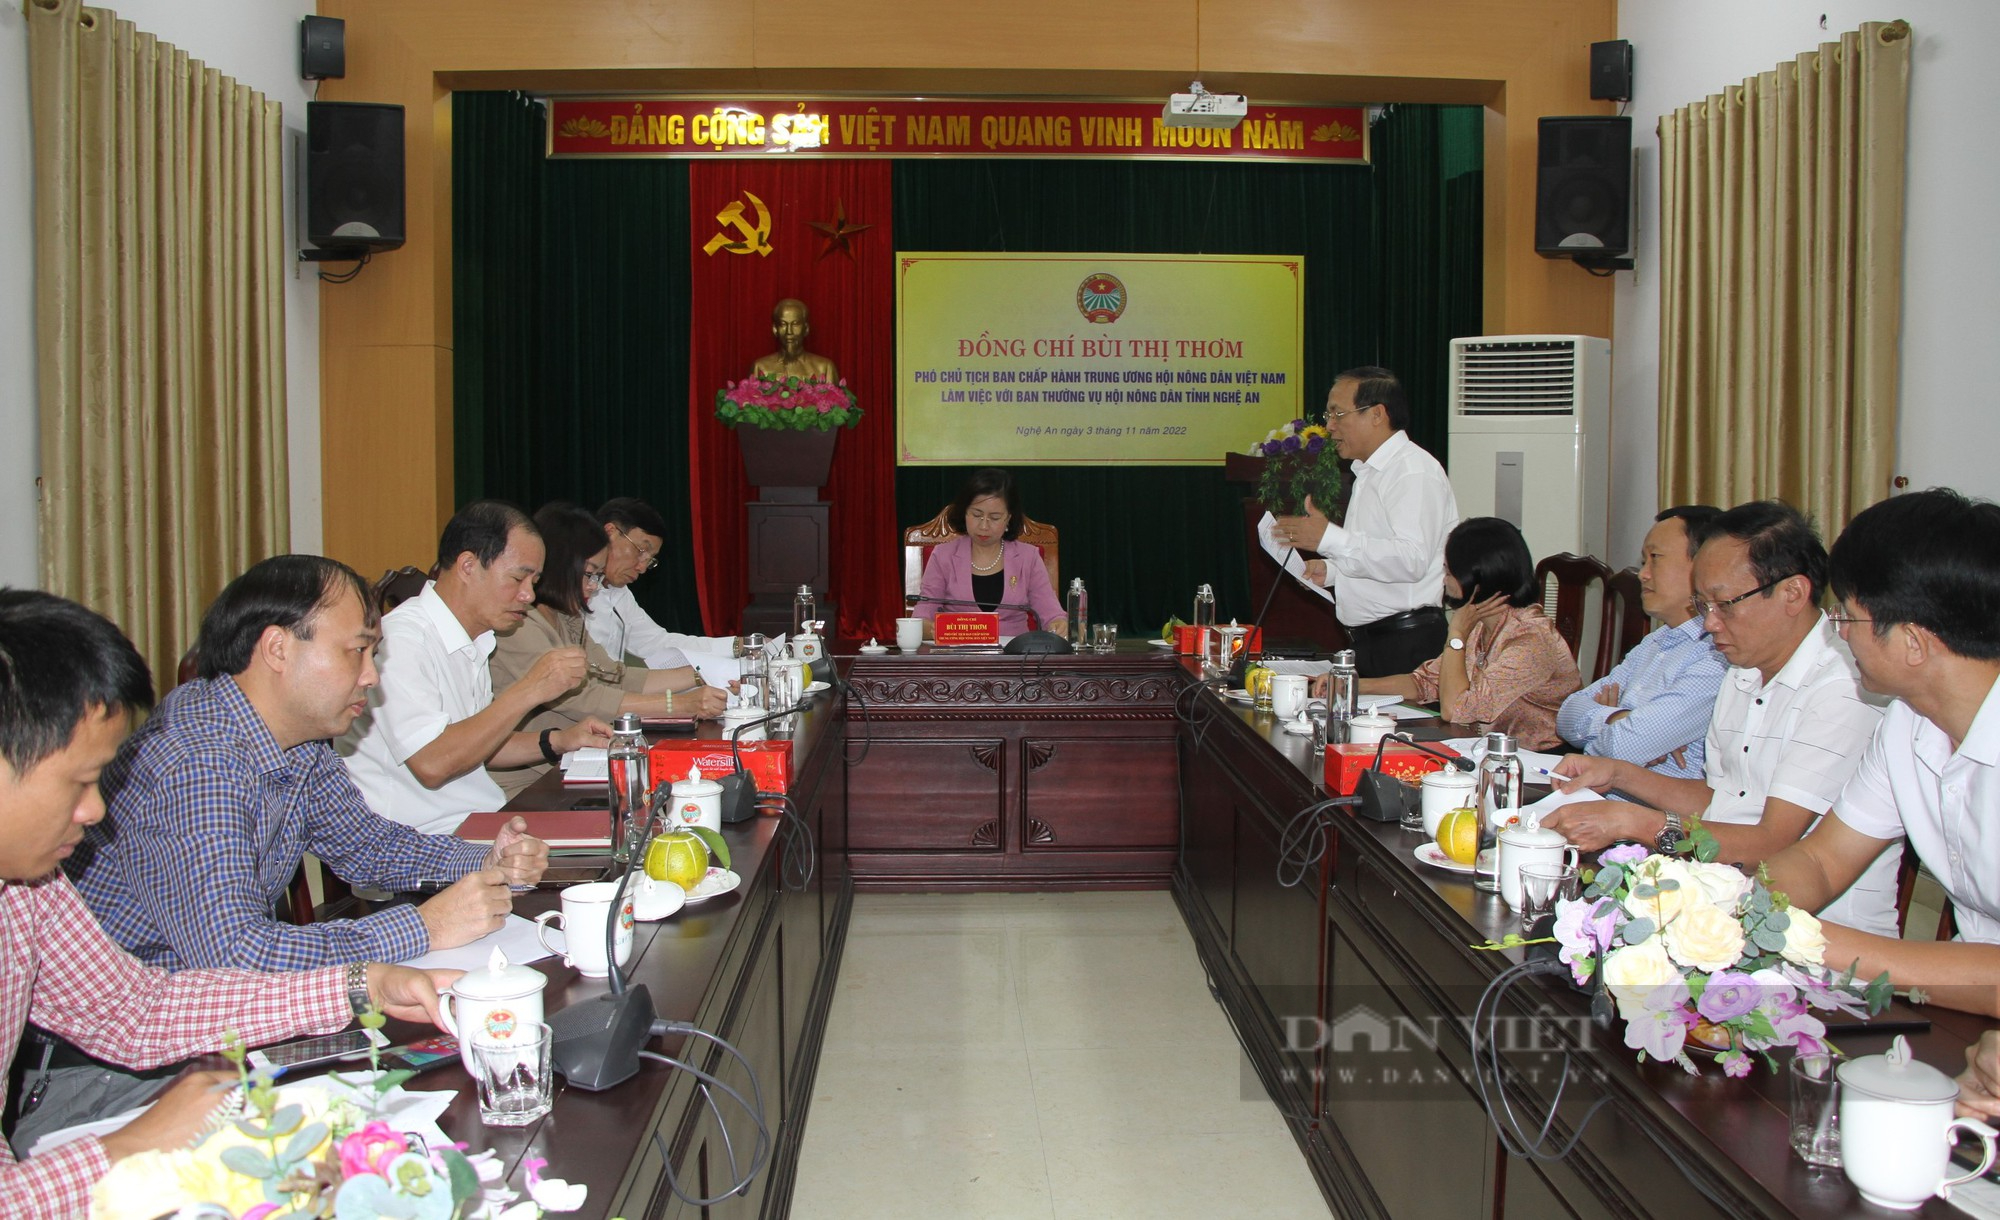 Phó Chủ tịch T.Ư Hội NDVN Bùi Thị Thơm: Thay đổi tư duy sẽ giúp nông dân Nghệ An nâng cao thu nhập - Ảnh 4.